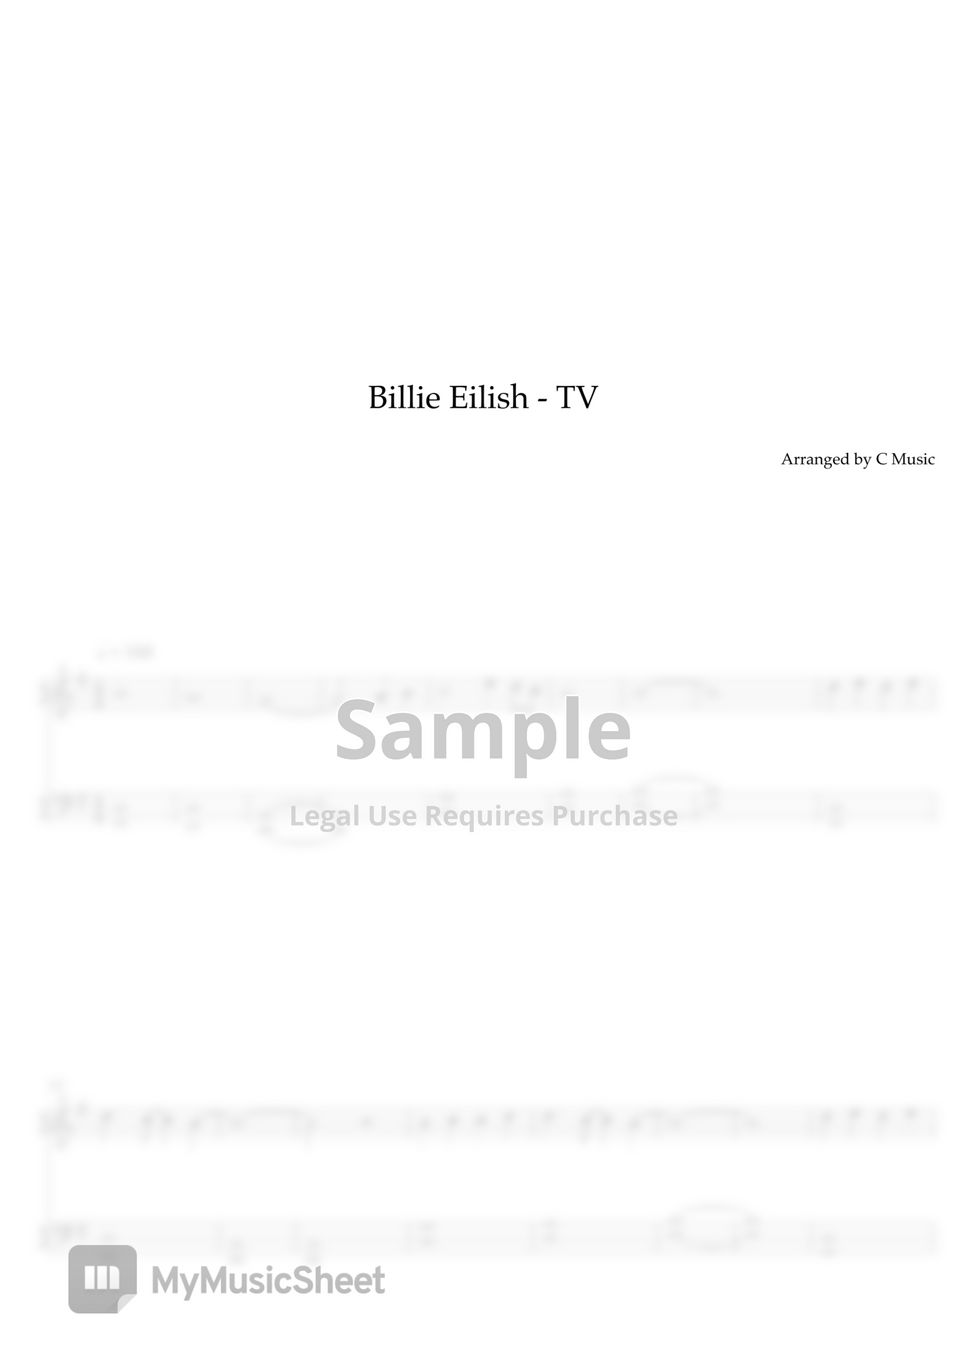 Billie Eilish - TV (Easy Version) by C Music